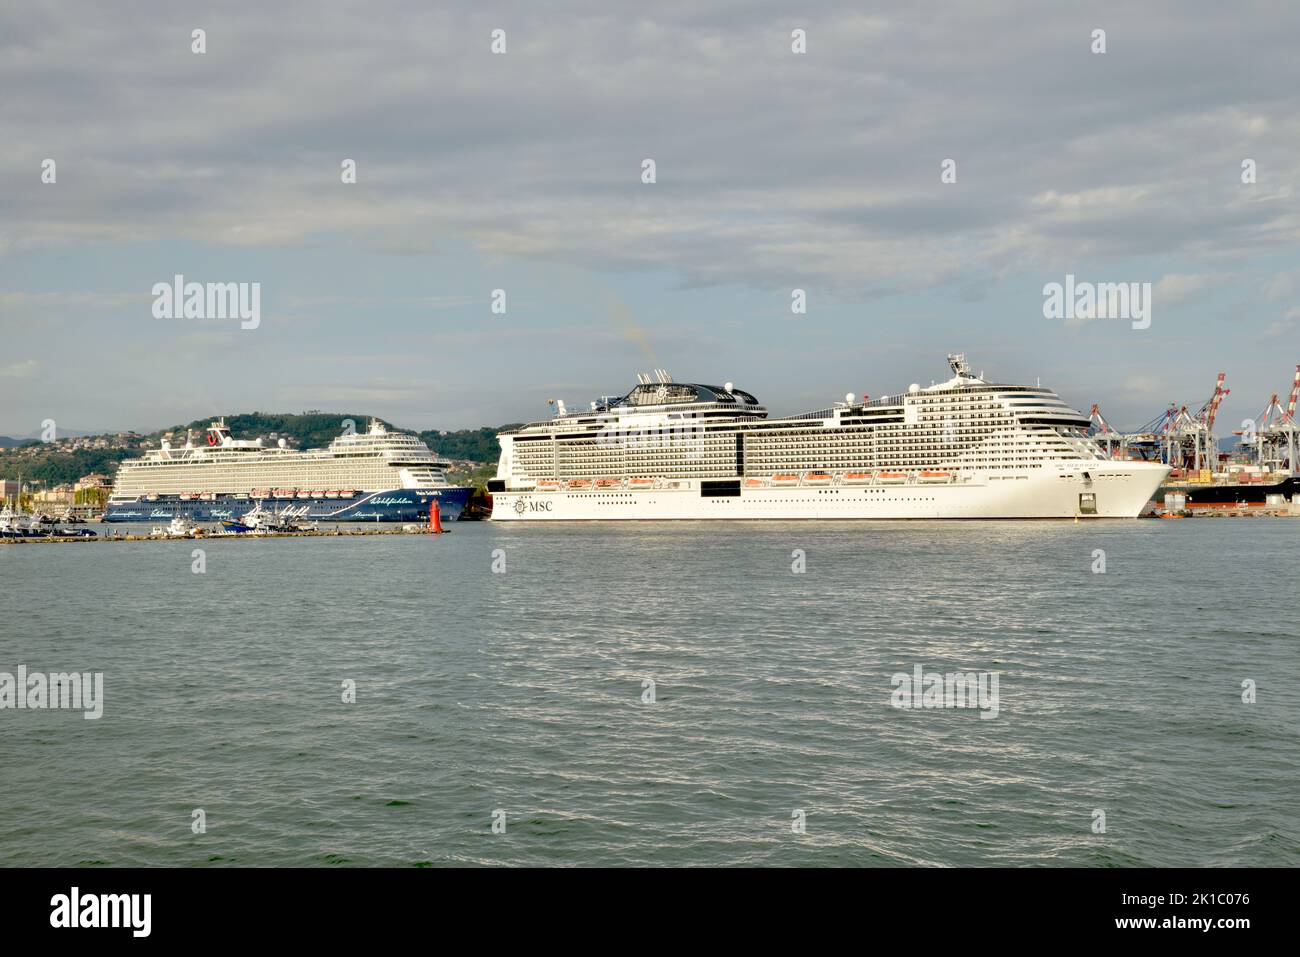 Le MSC Meraviglia et Mein Schiff2 se sont alignés et ont bougé dans le port de la Spezia - Italie Banque D'Images